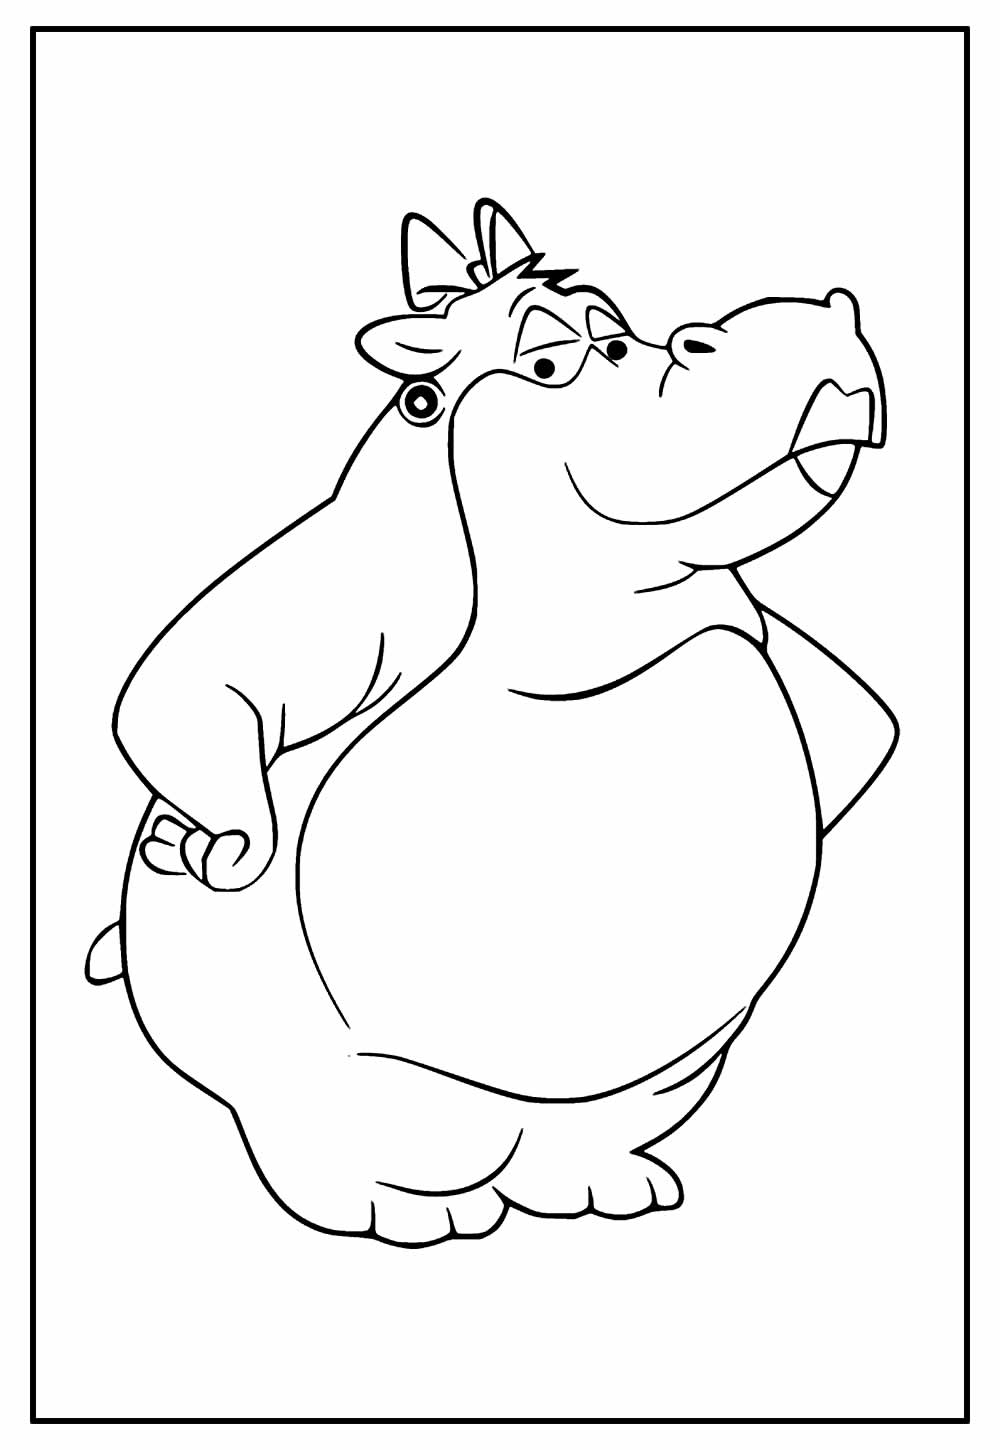 Desenho de Hipopótamo para imprimir e colorir